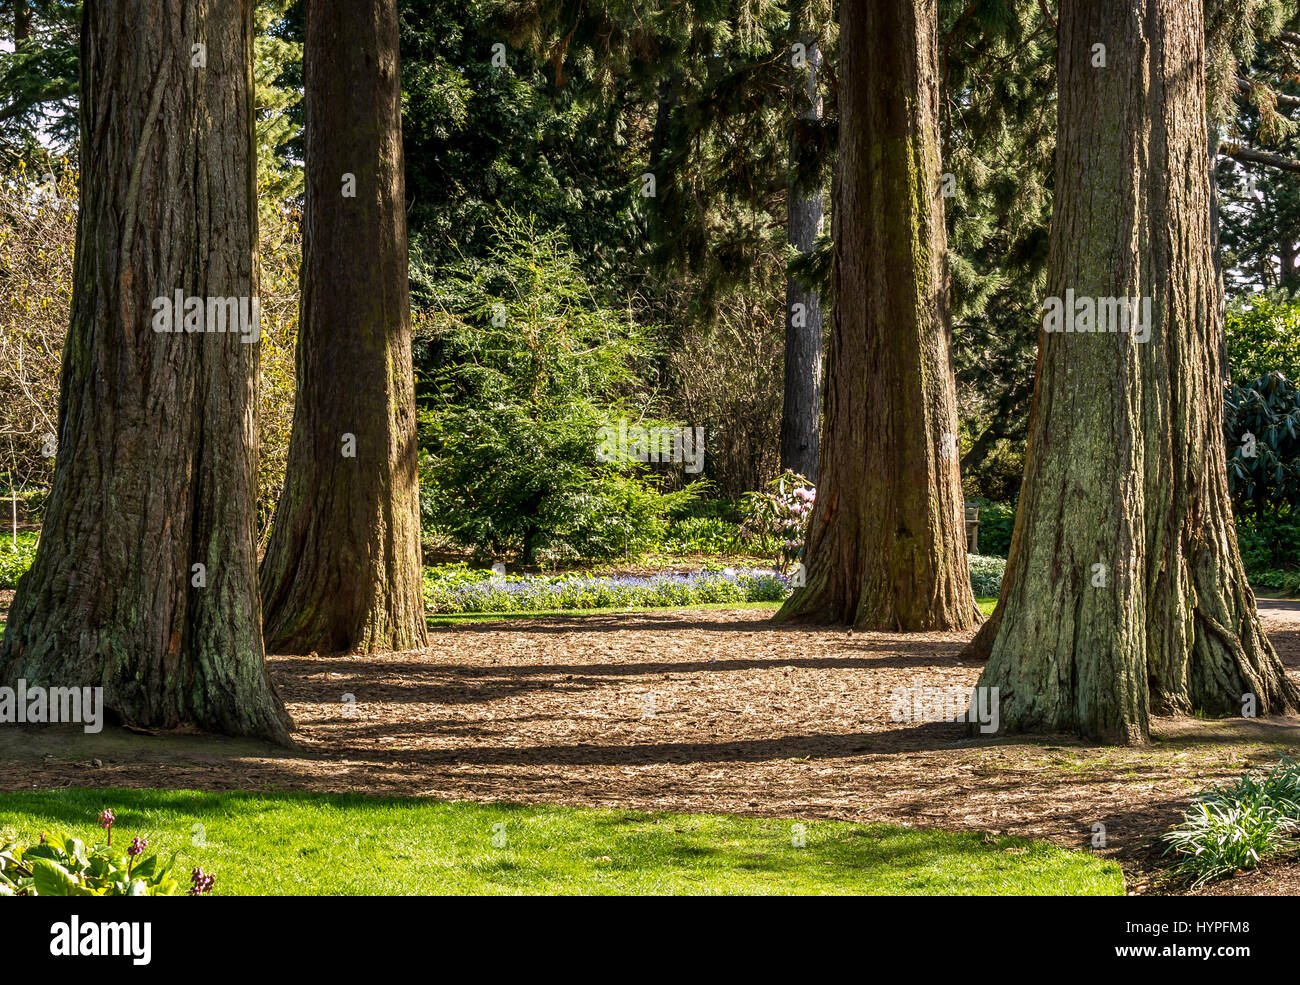 Soleil paisible le séquoia géant Redwood Grove à Royal Botanic Gardens, dans la mémoire de l'écologiste John Muir, Édimbourg, Écosse, Royaume-Uni Banque D'Images